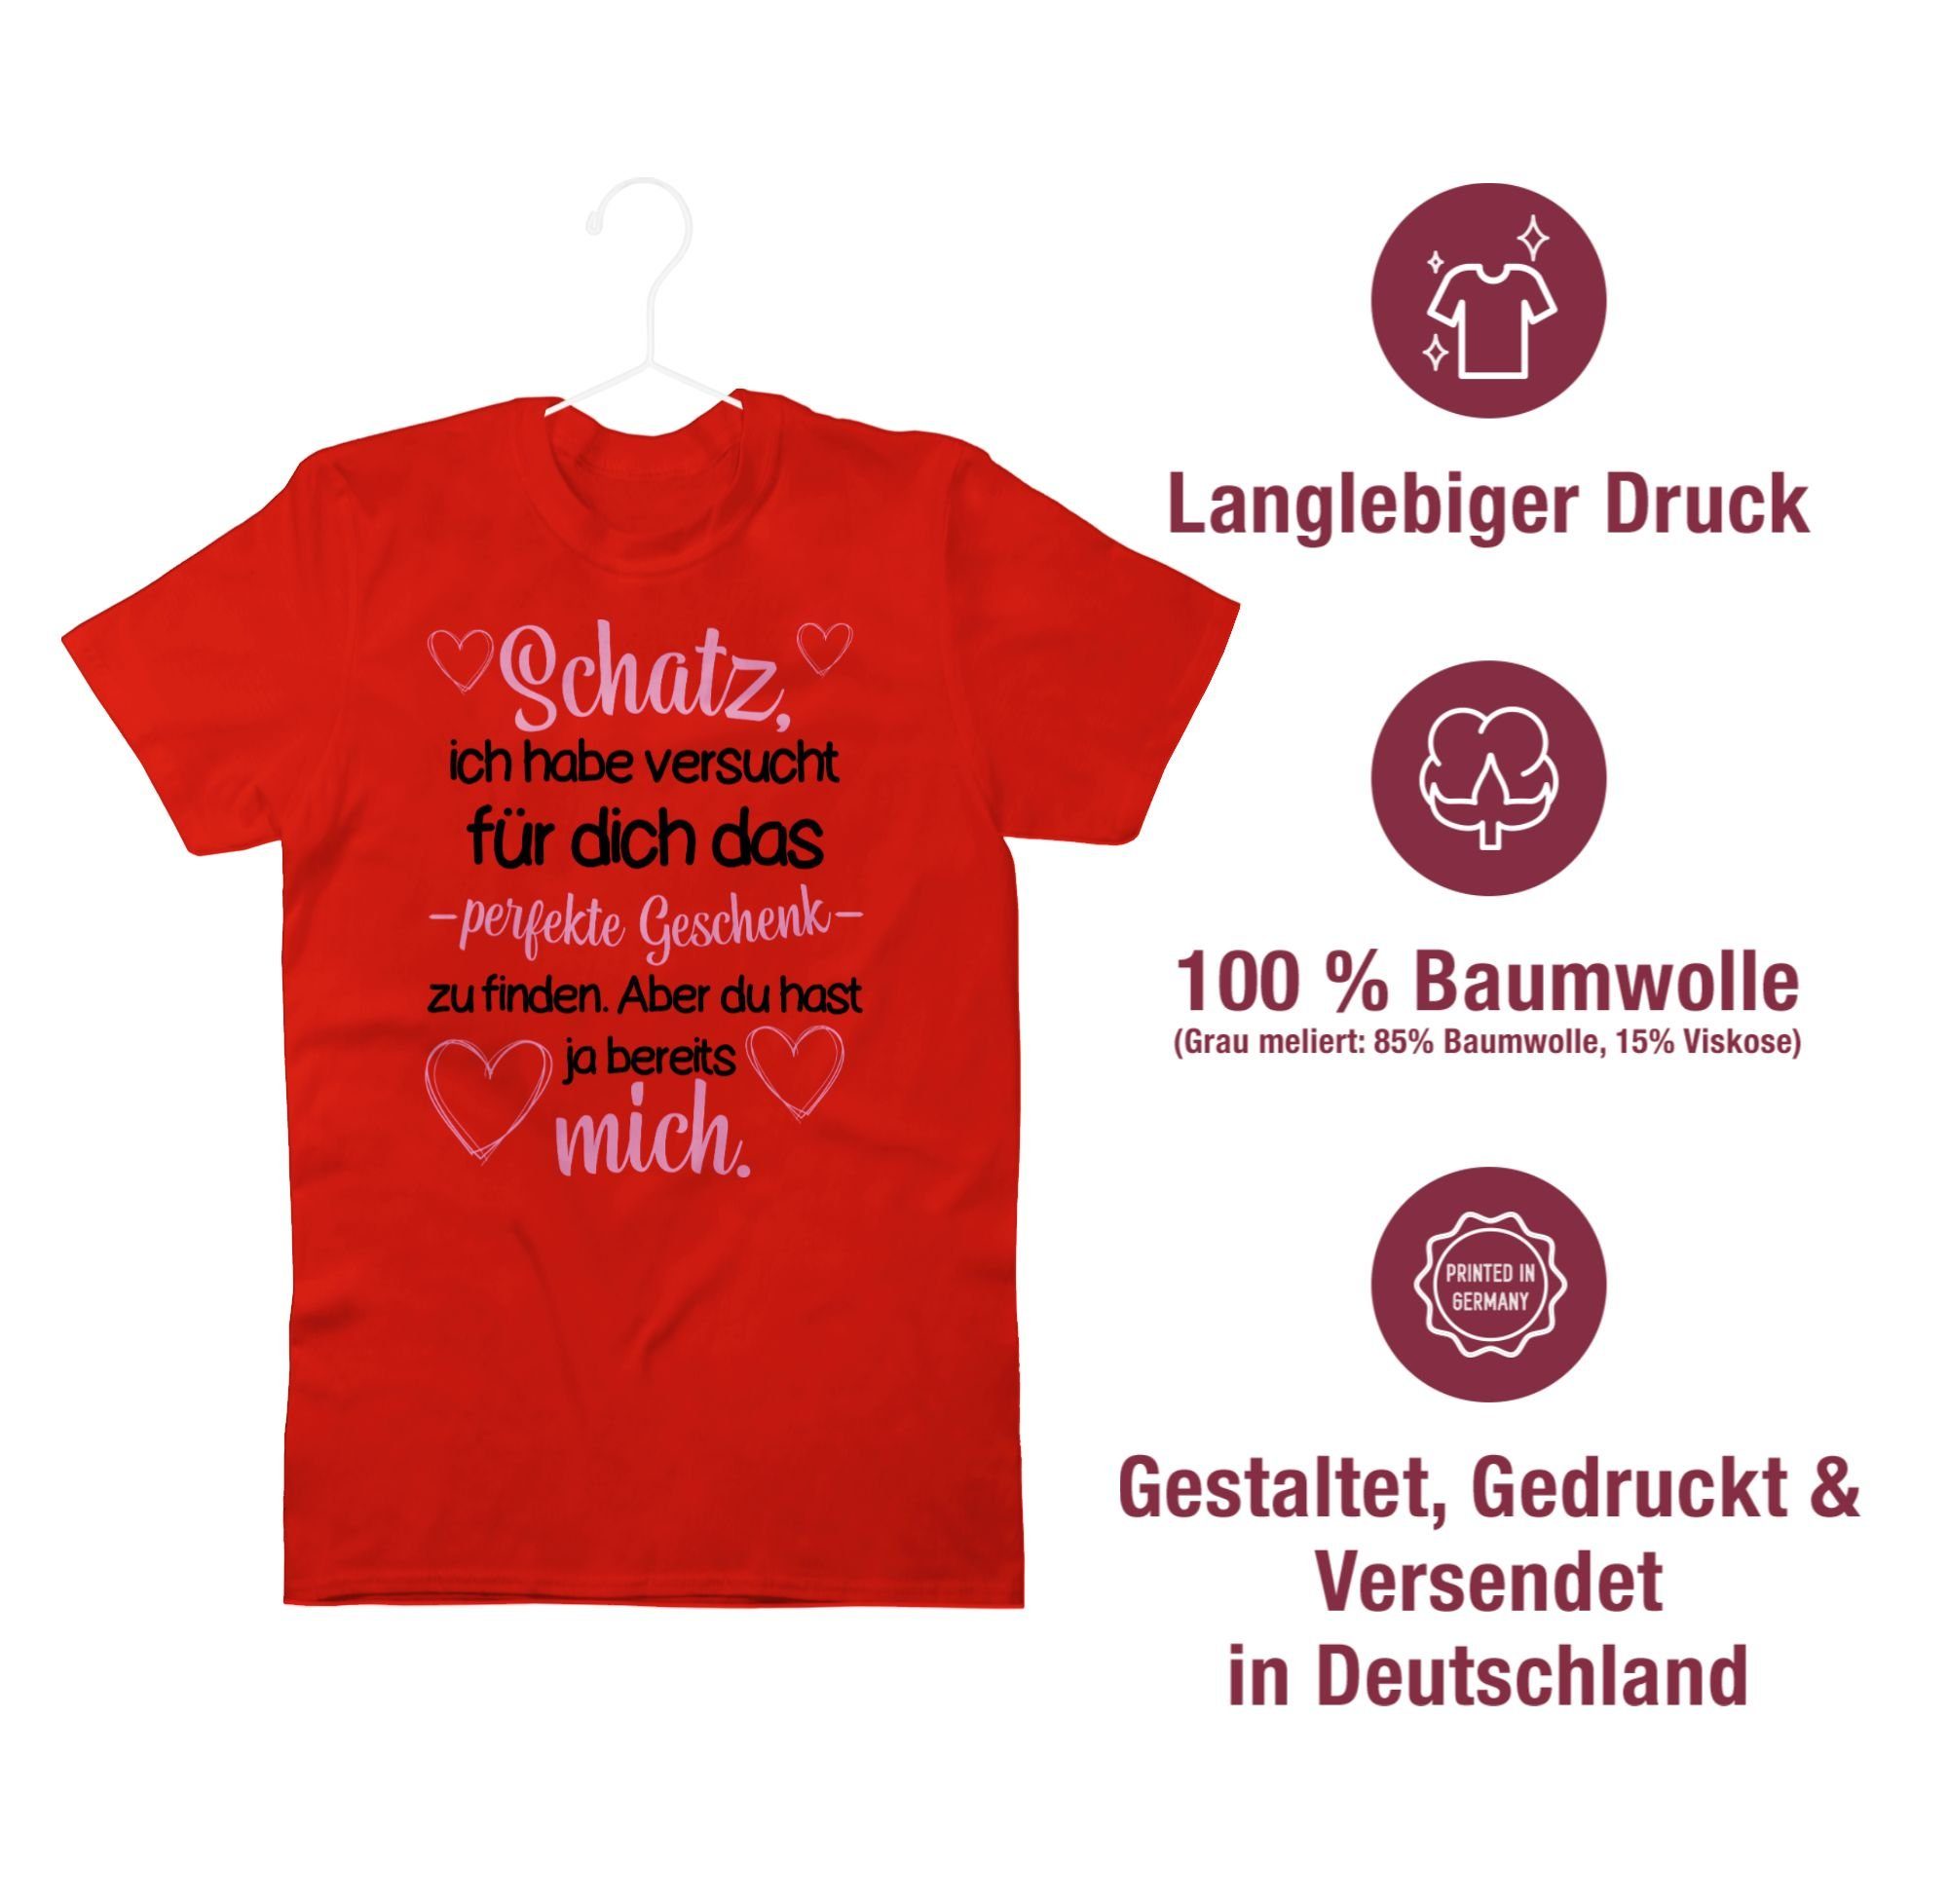 perfekte Valentinstag Schatz Liebe 2 das Geschenk Shirtracer habe finden zu versucht T-Shirt Rot Partner